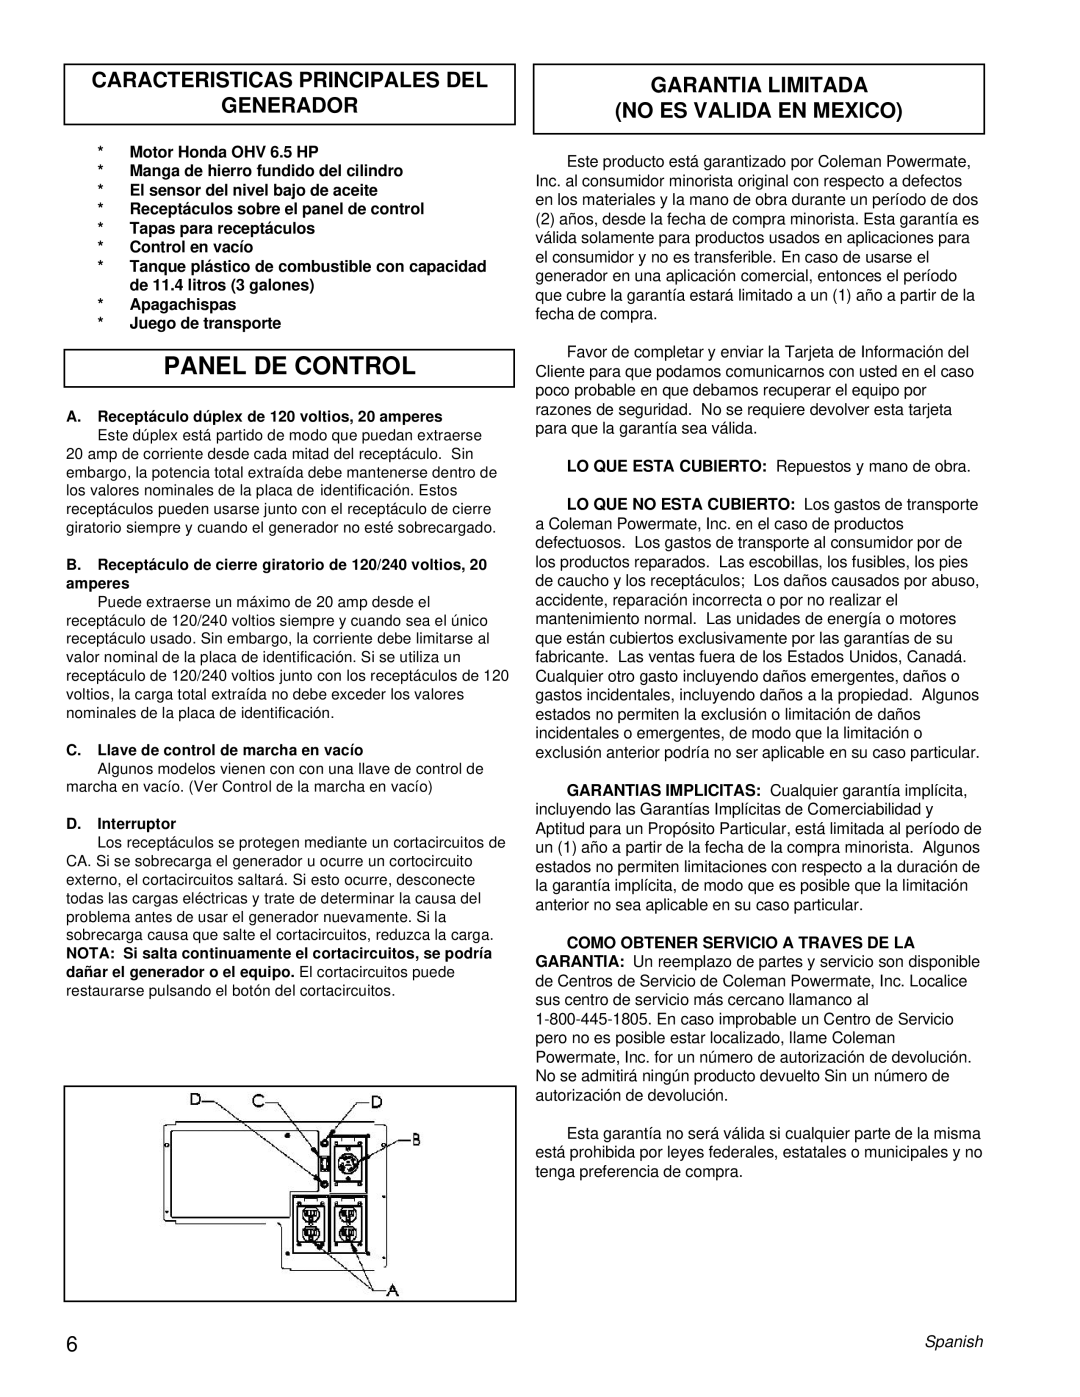 Powermate PM0463302 Panel De Control, Caracteristicas Principales Del Generador, Garantia Limitada No Es Valida En Mexico 